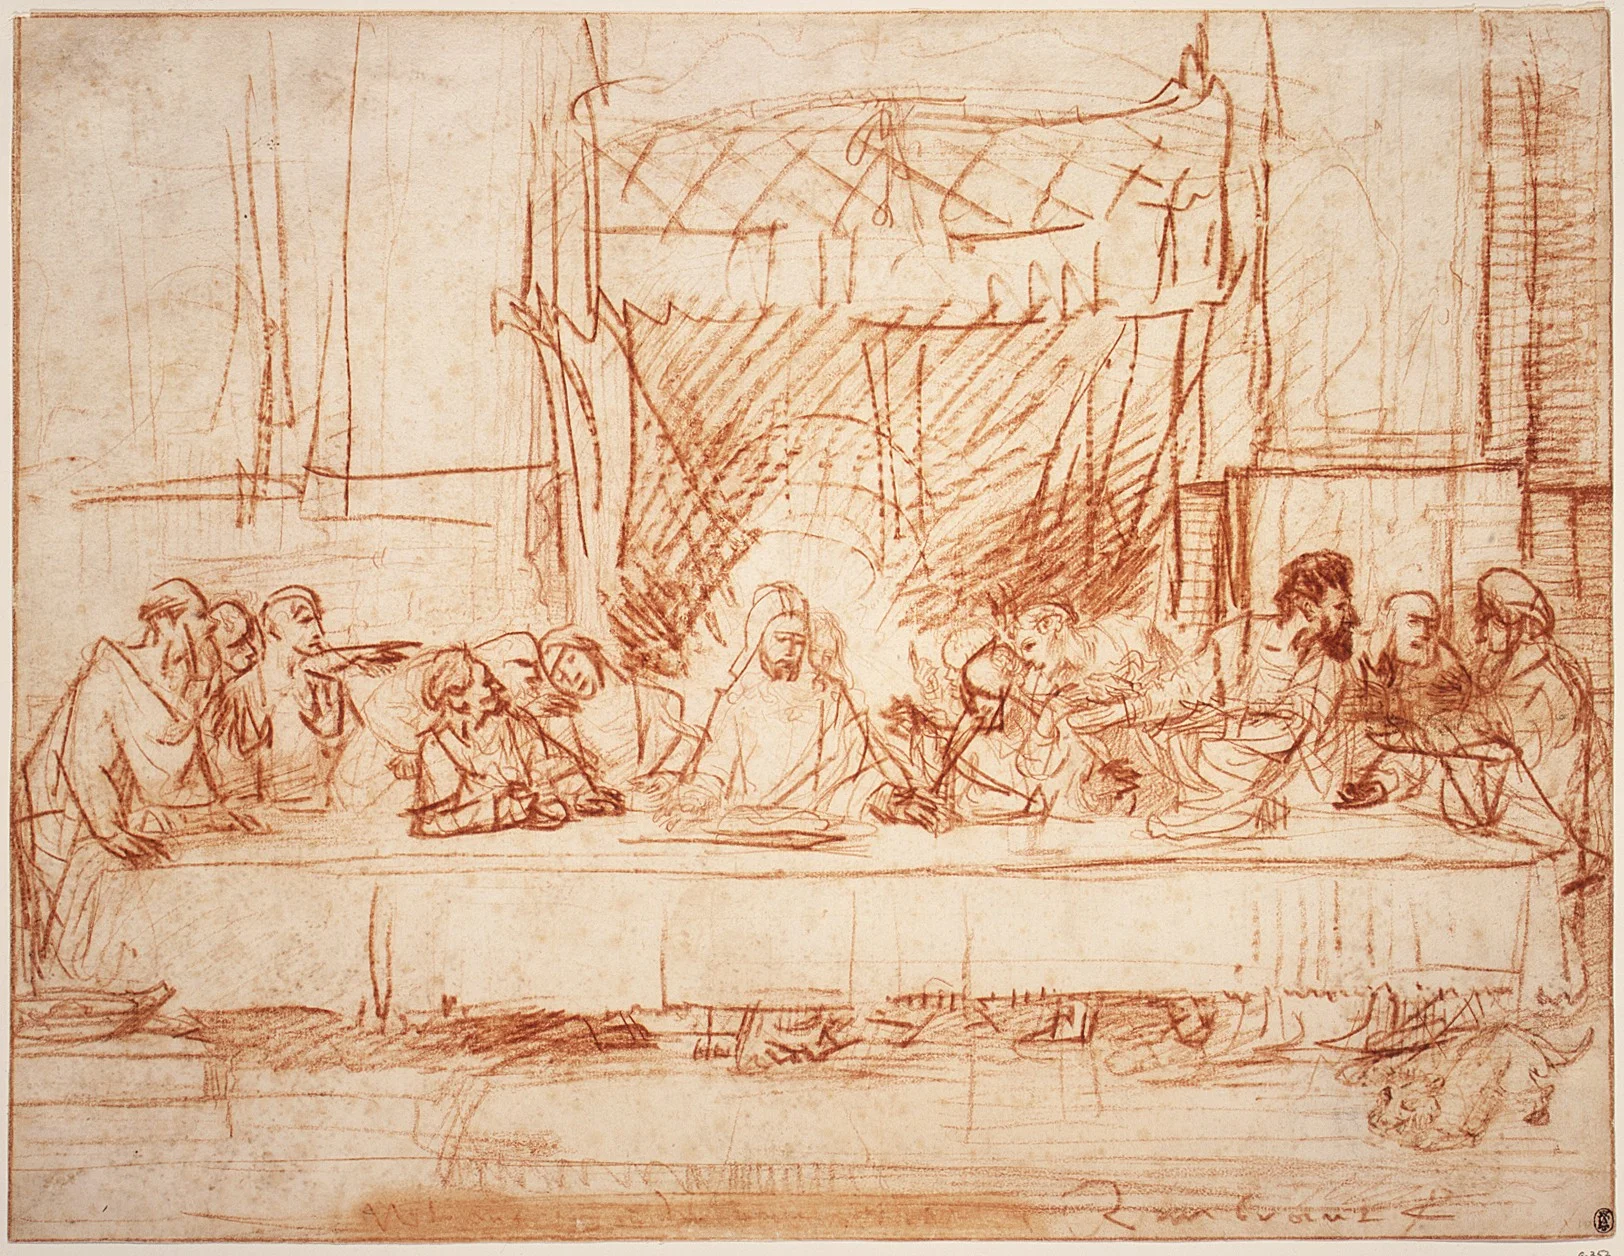 Rembrandt: Das letzte Abendmahl